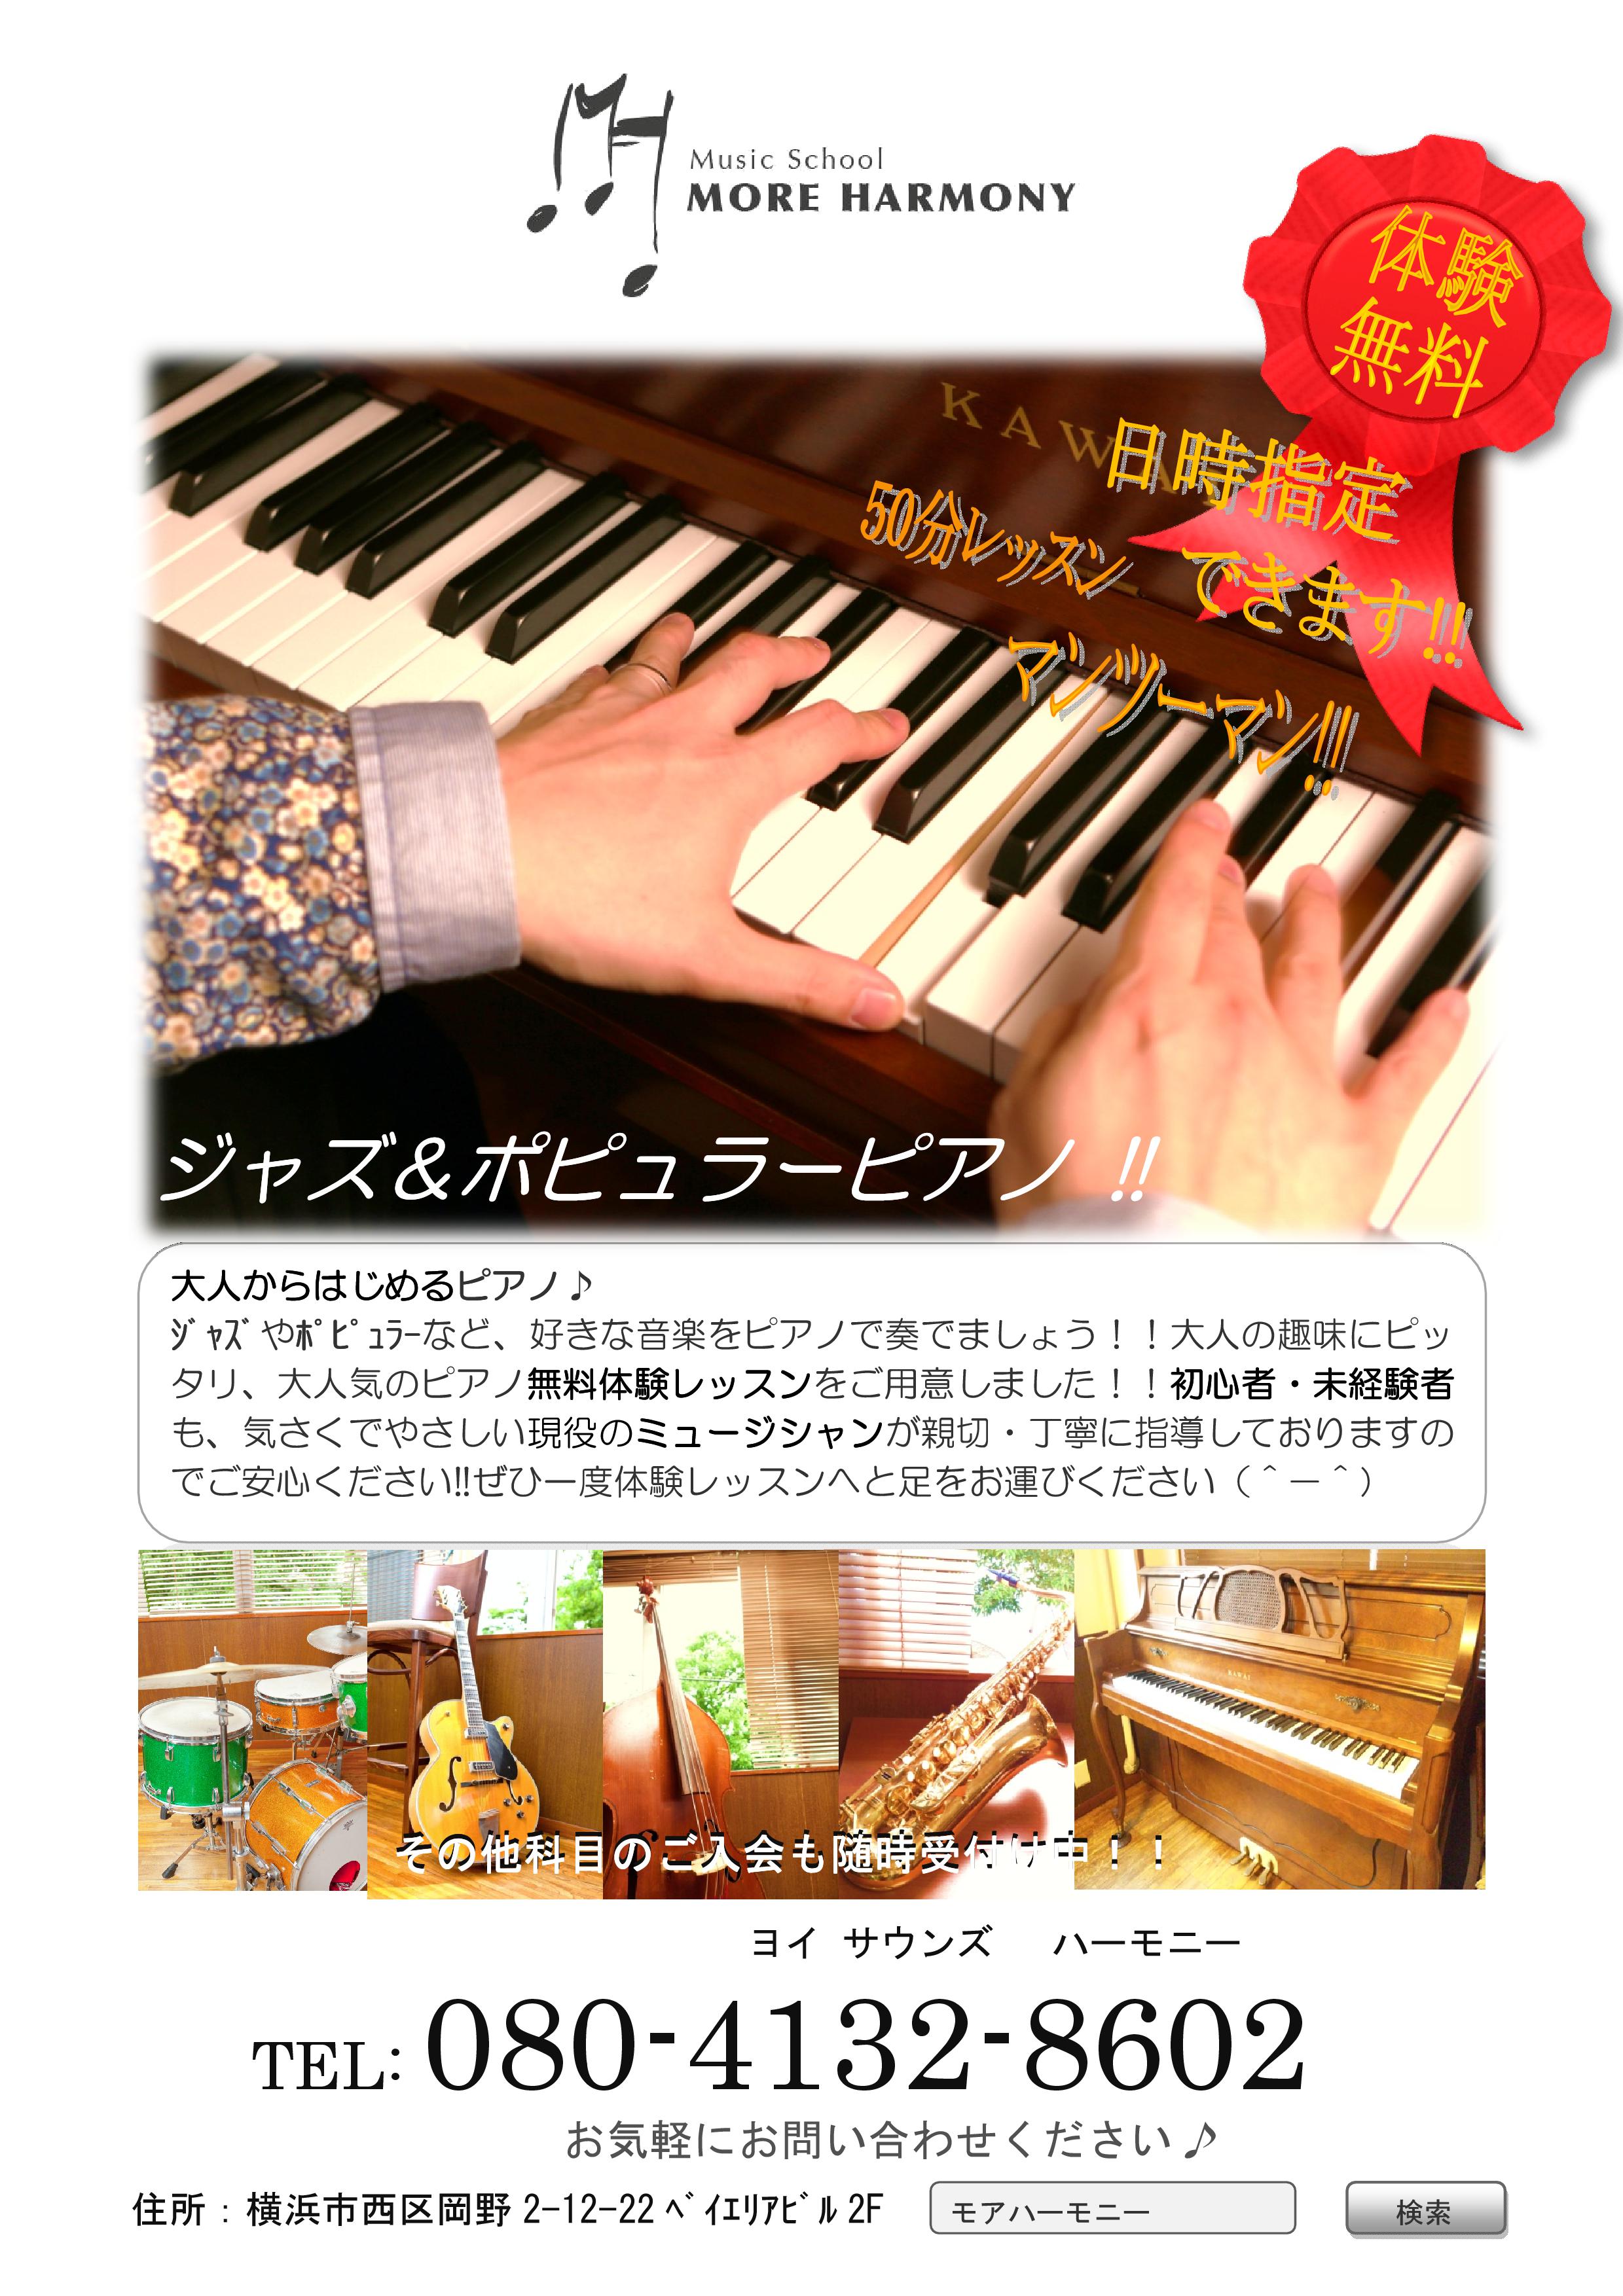 Music School More Harmony ミュージックスクール モアハーモニー 横浜音楽スクール Music School More Harmony